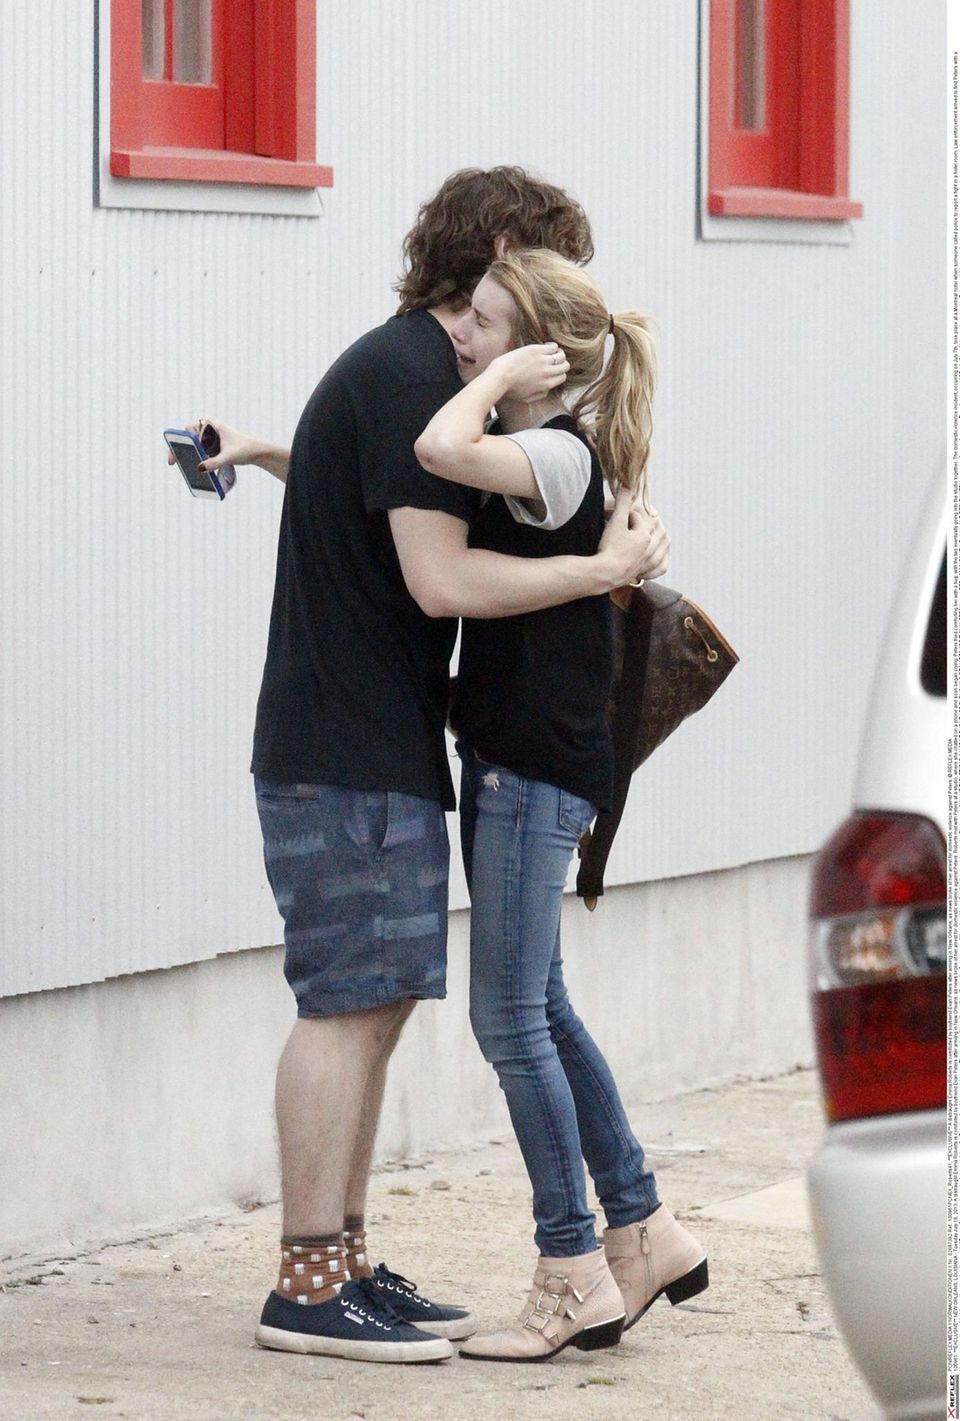 16. Juli 2013: Emma Roberts lässt sich von ihrem Freund Evan Peters trösten nachdem die Nachricht von einer Prügelattacke von ihr gegen ihren Freund ans Licht kam.